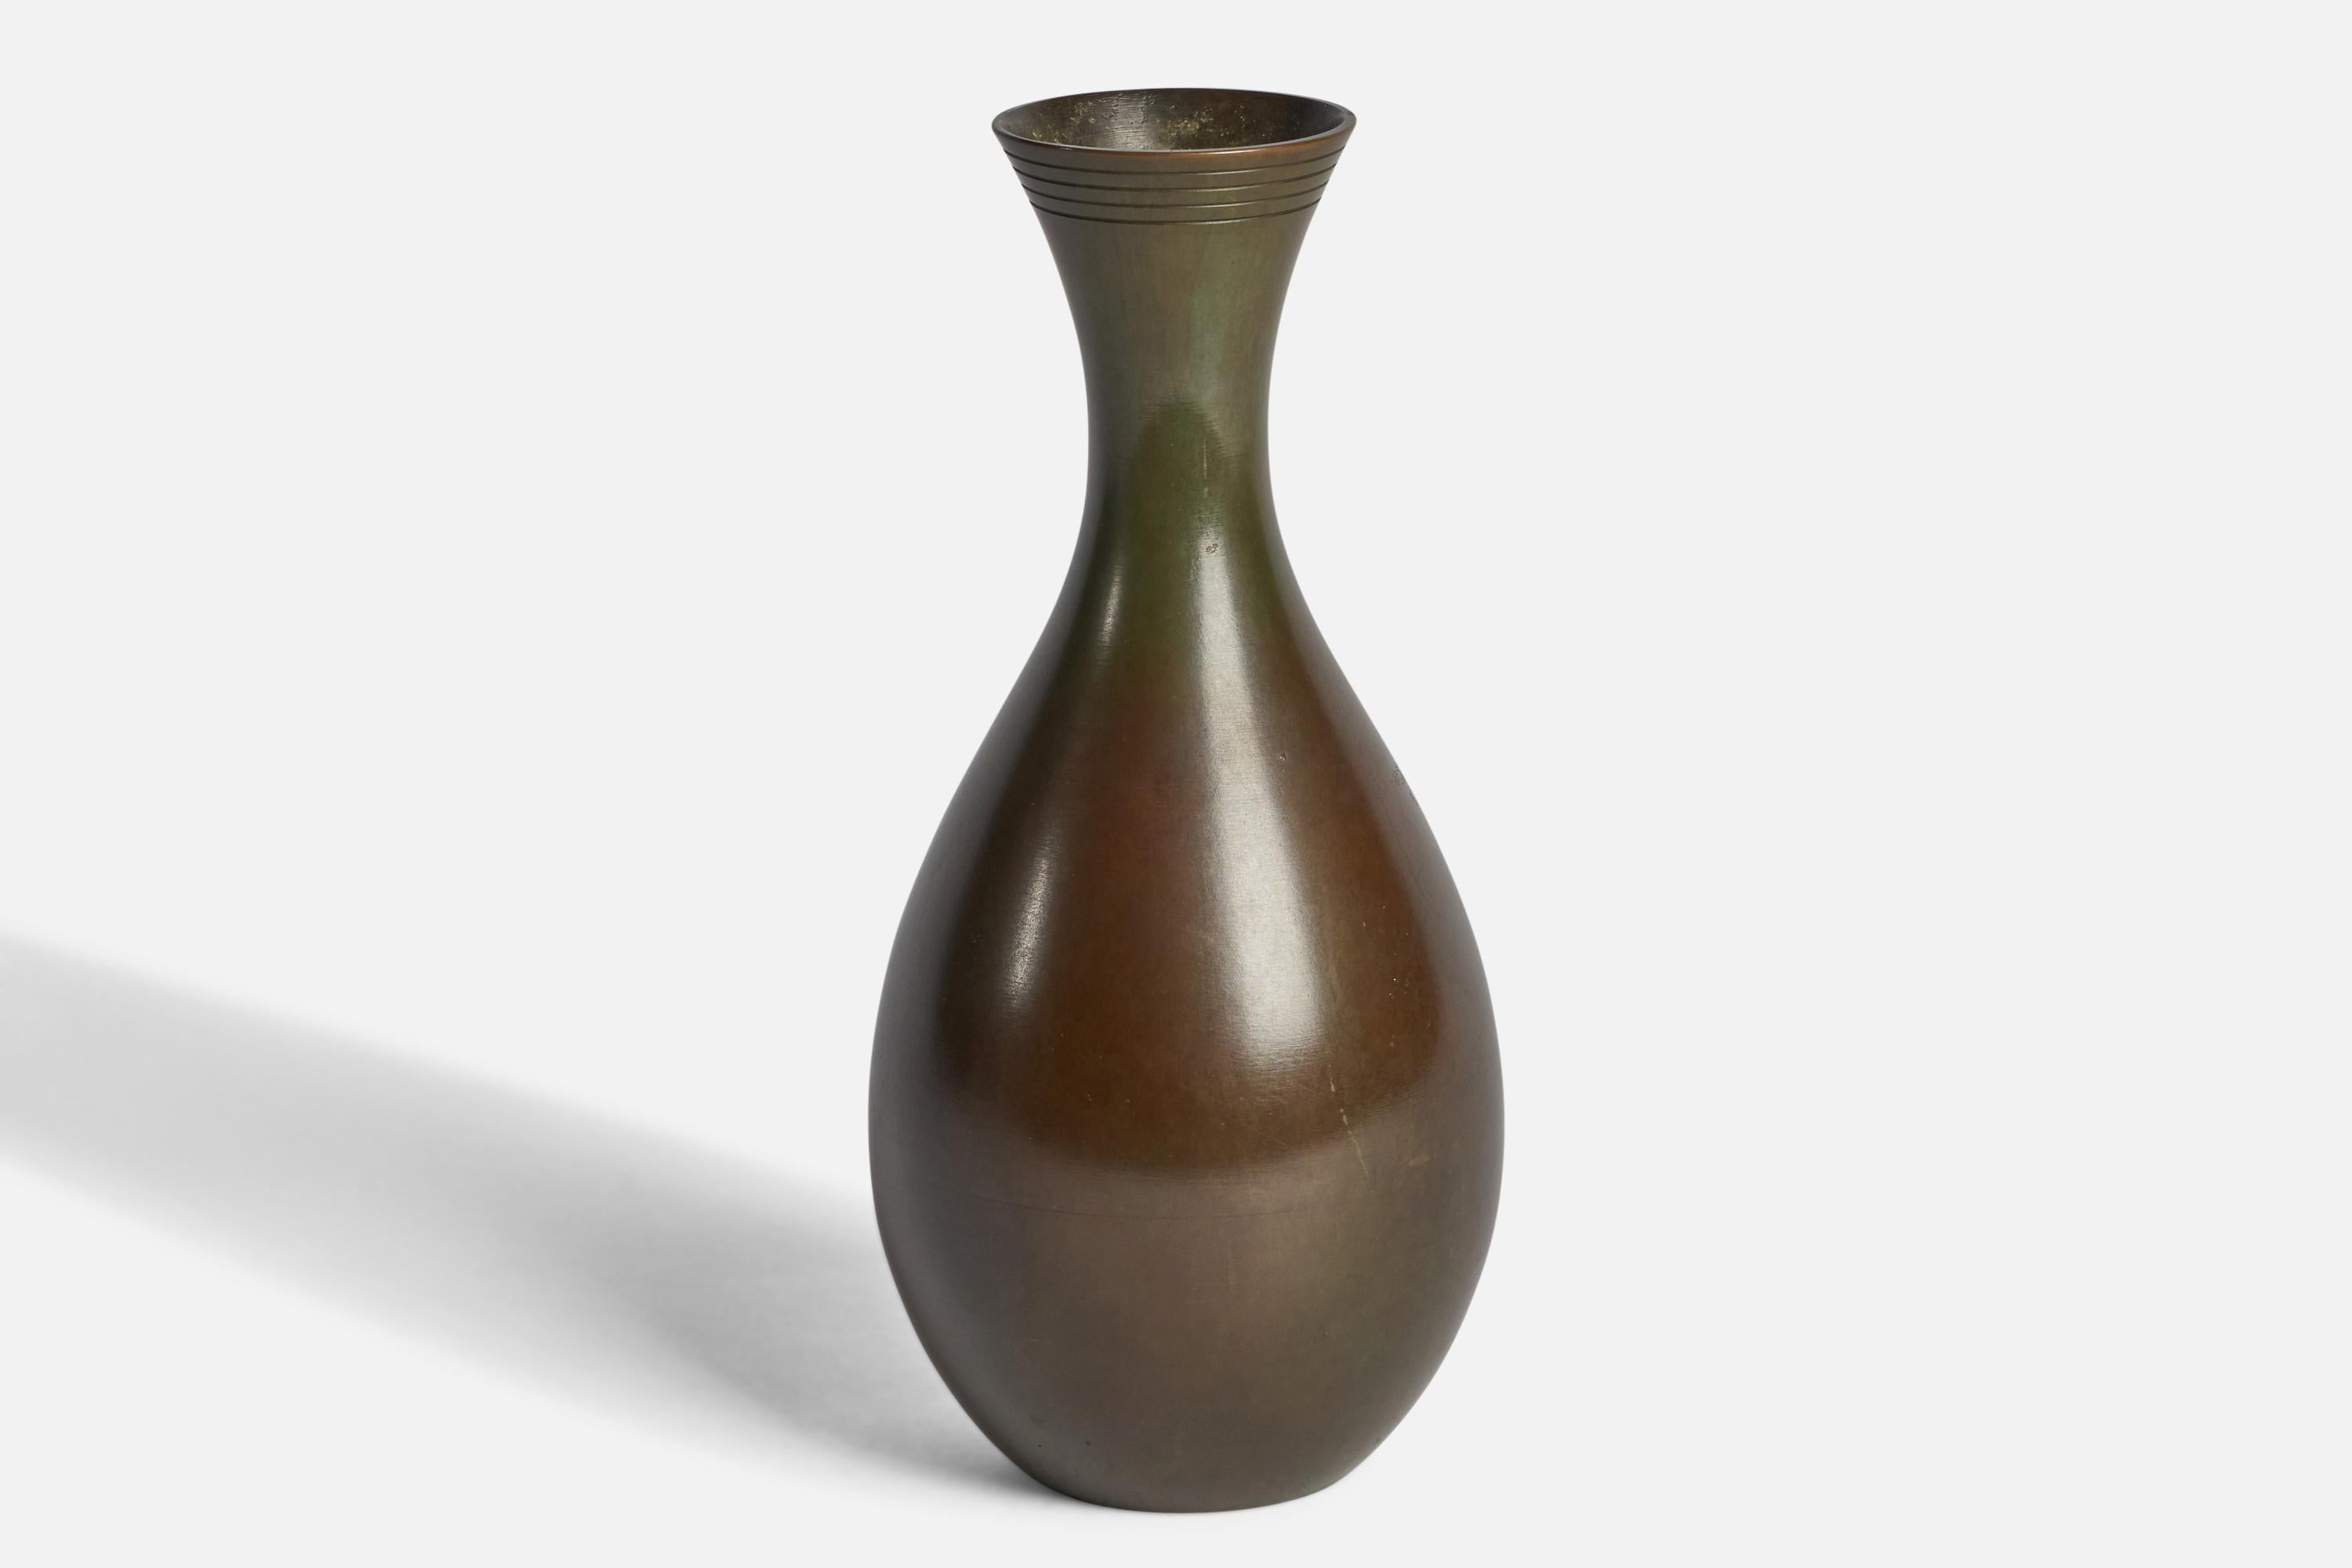 A bronze vase designed and produced by GAB Guldsmedsaktiebolaget, Sweden, 1930s.